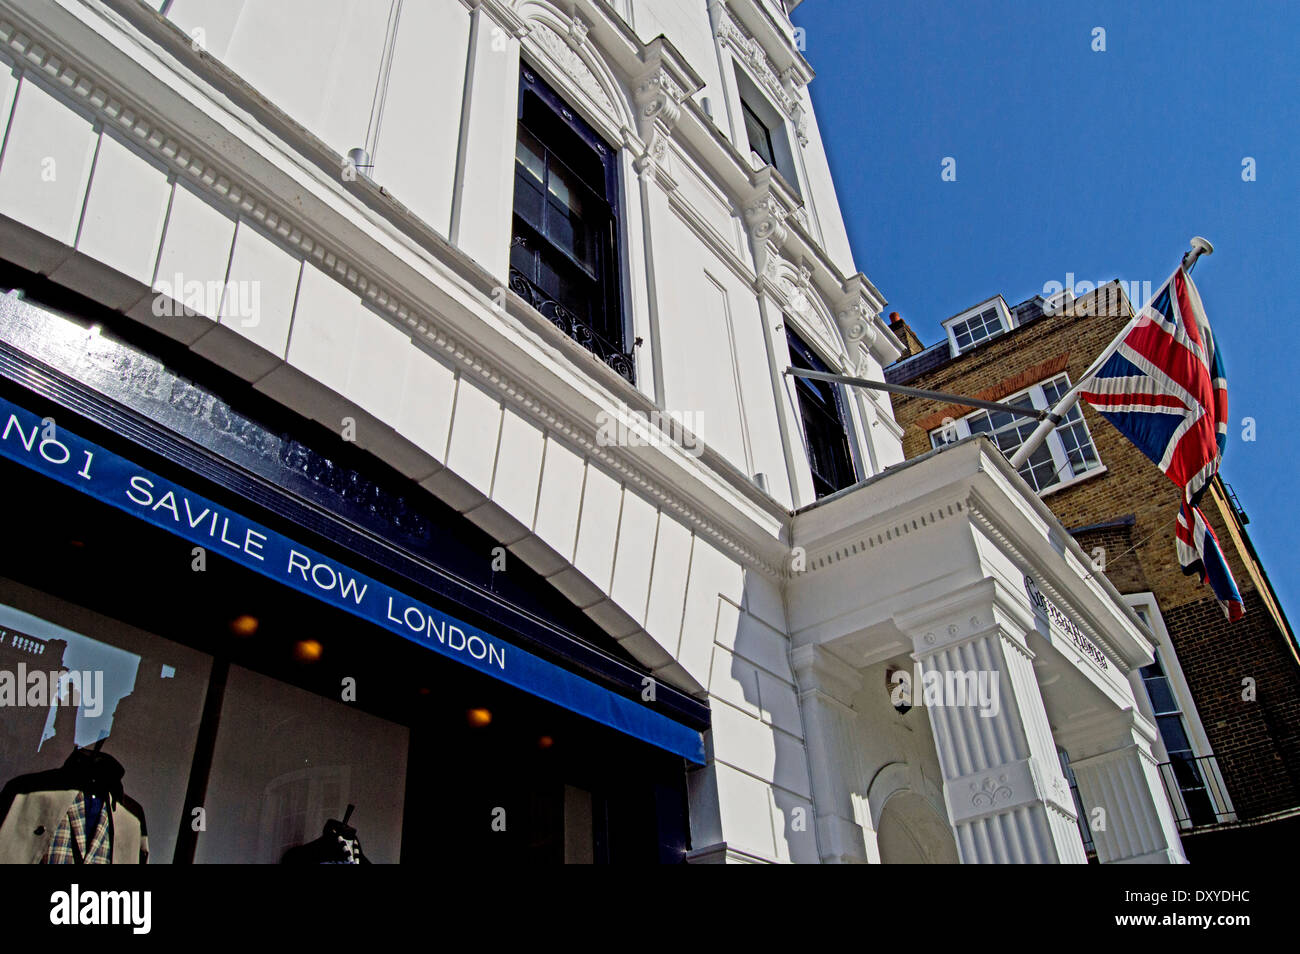 Avis de Savile Row connue pour son adaptation sur mesure traditionnel pour les hommes, Mayfair, Londres, Angleterre, Royaume-Uni Banque D'Images